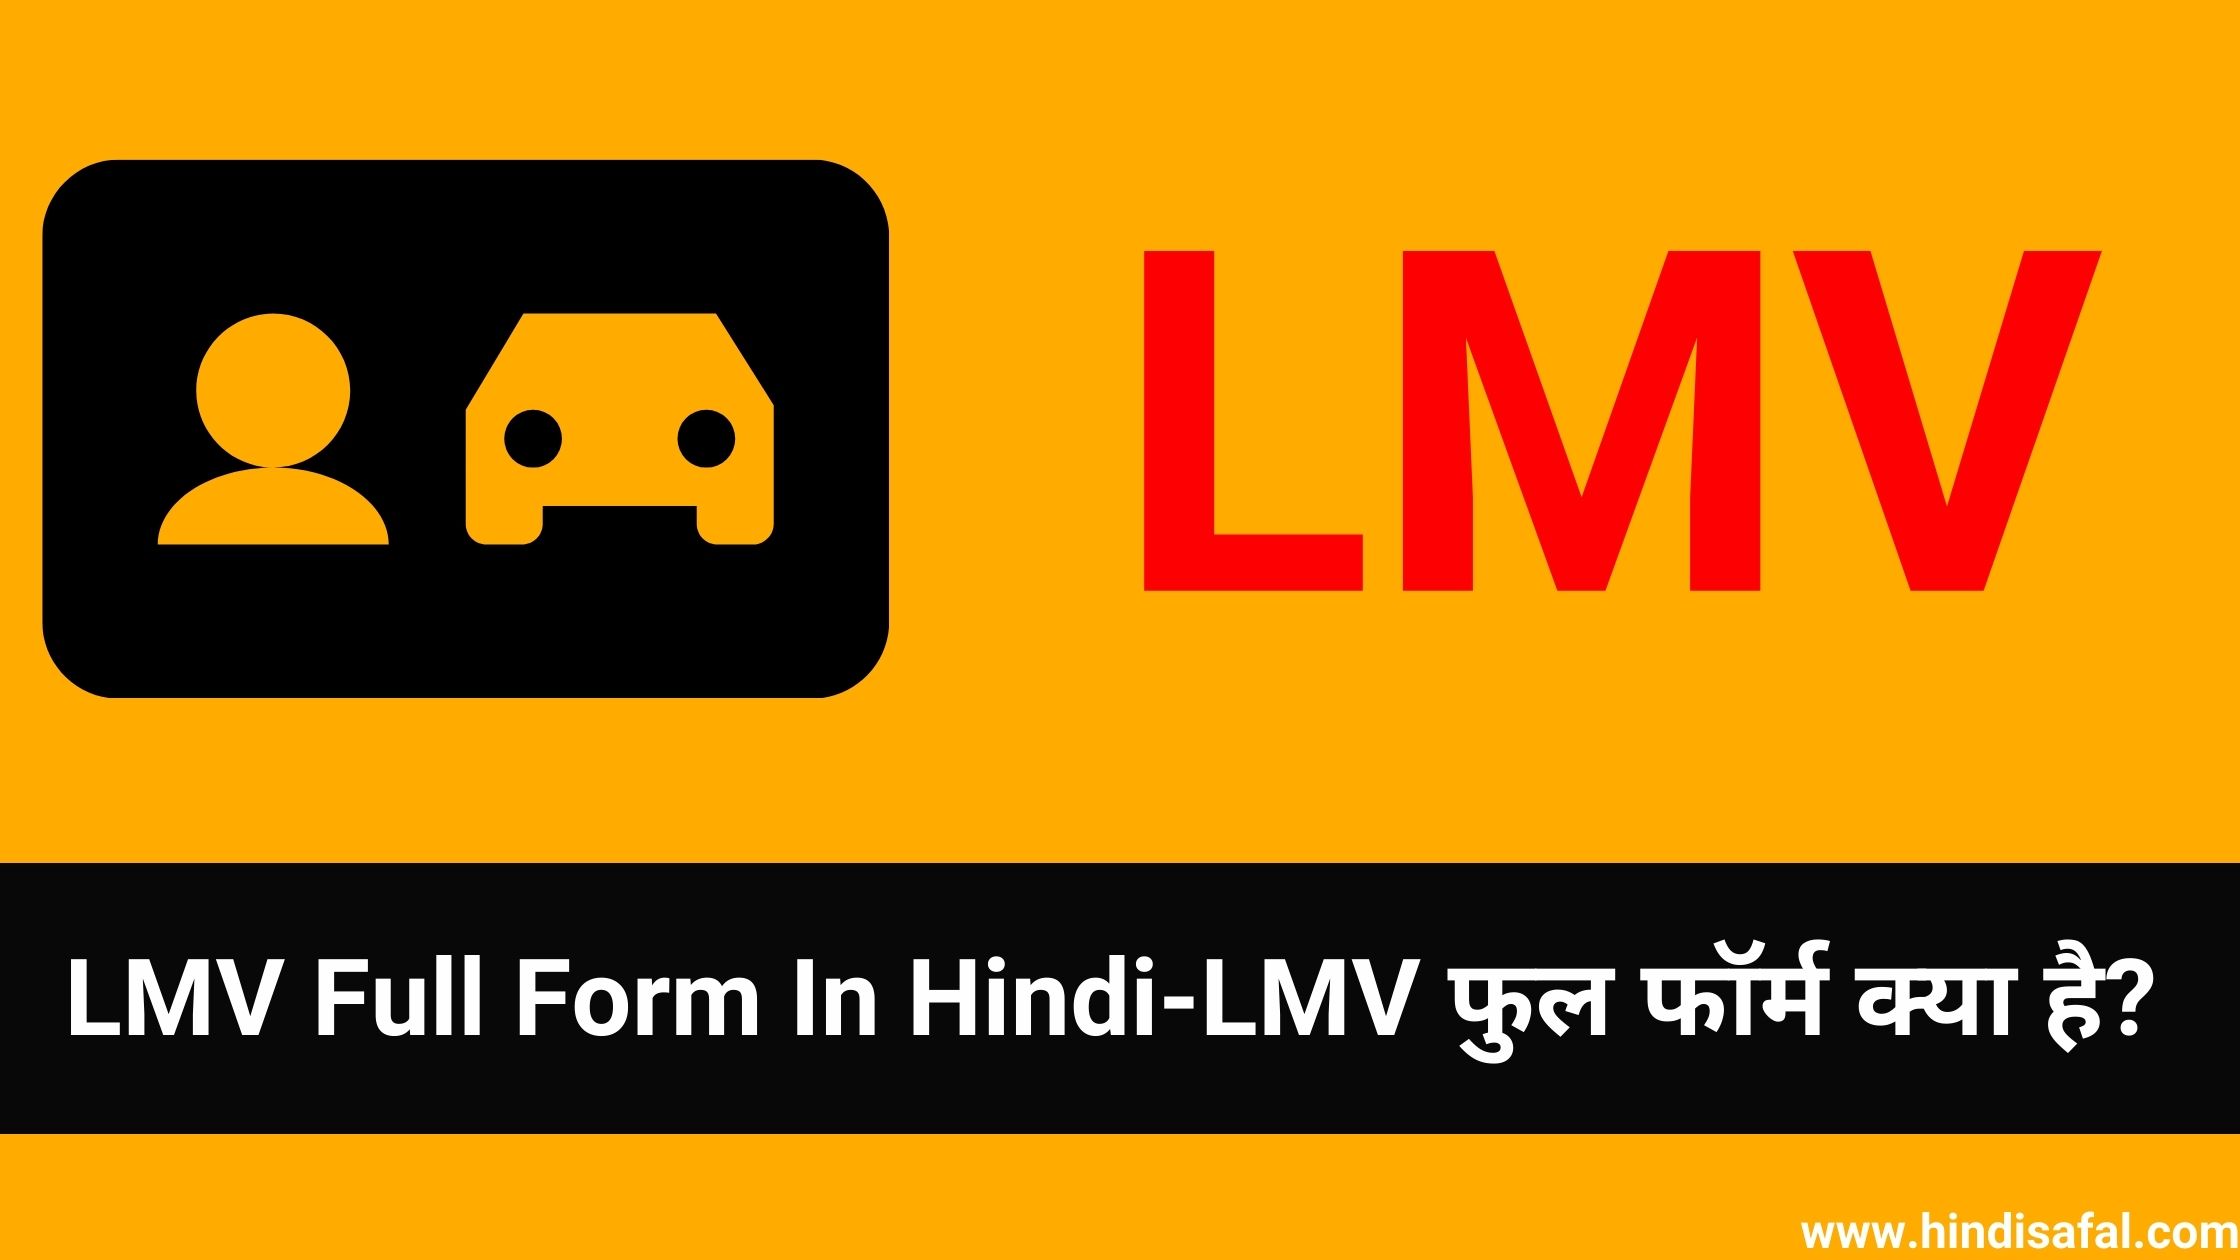 LMV Full Form In Hindi-LMV फुल फॉर्म क्या है?